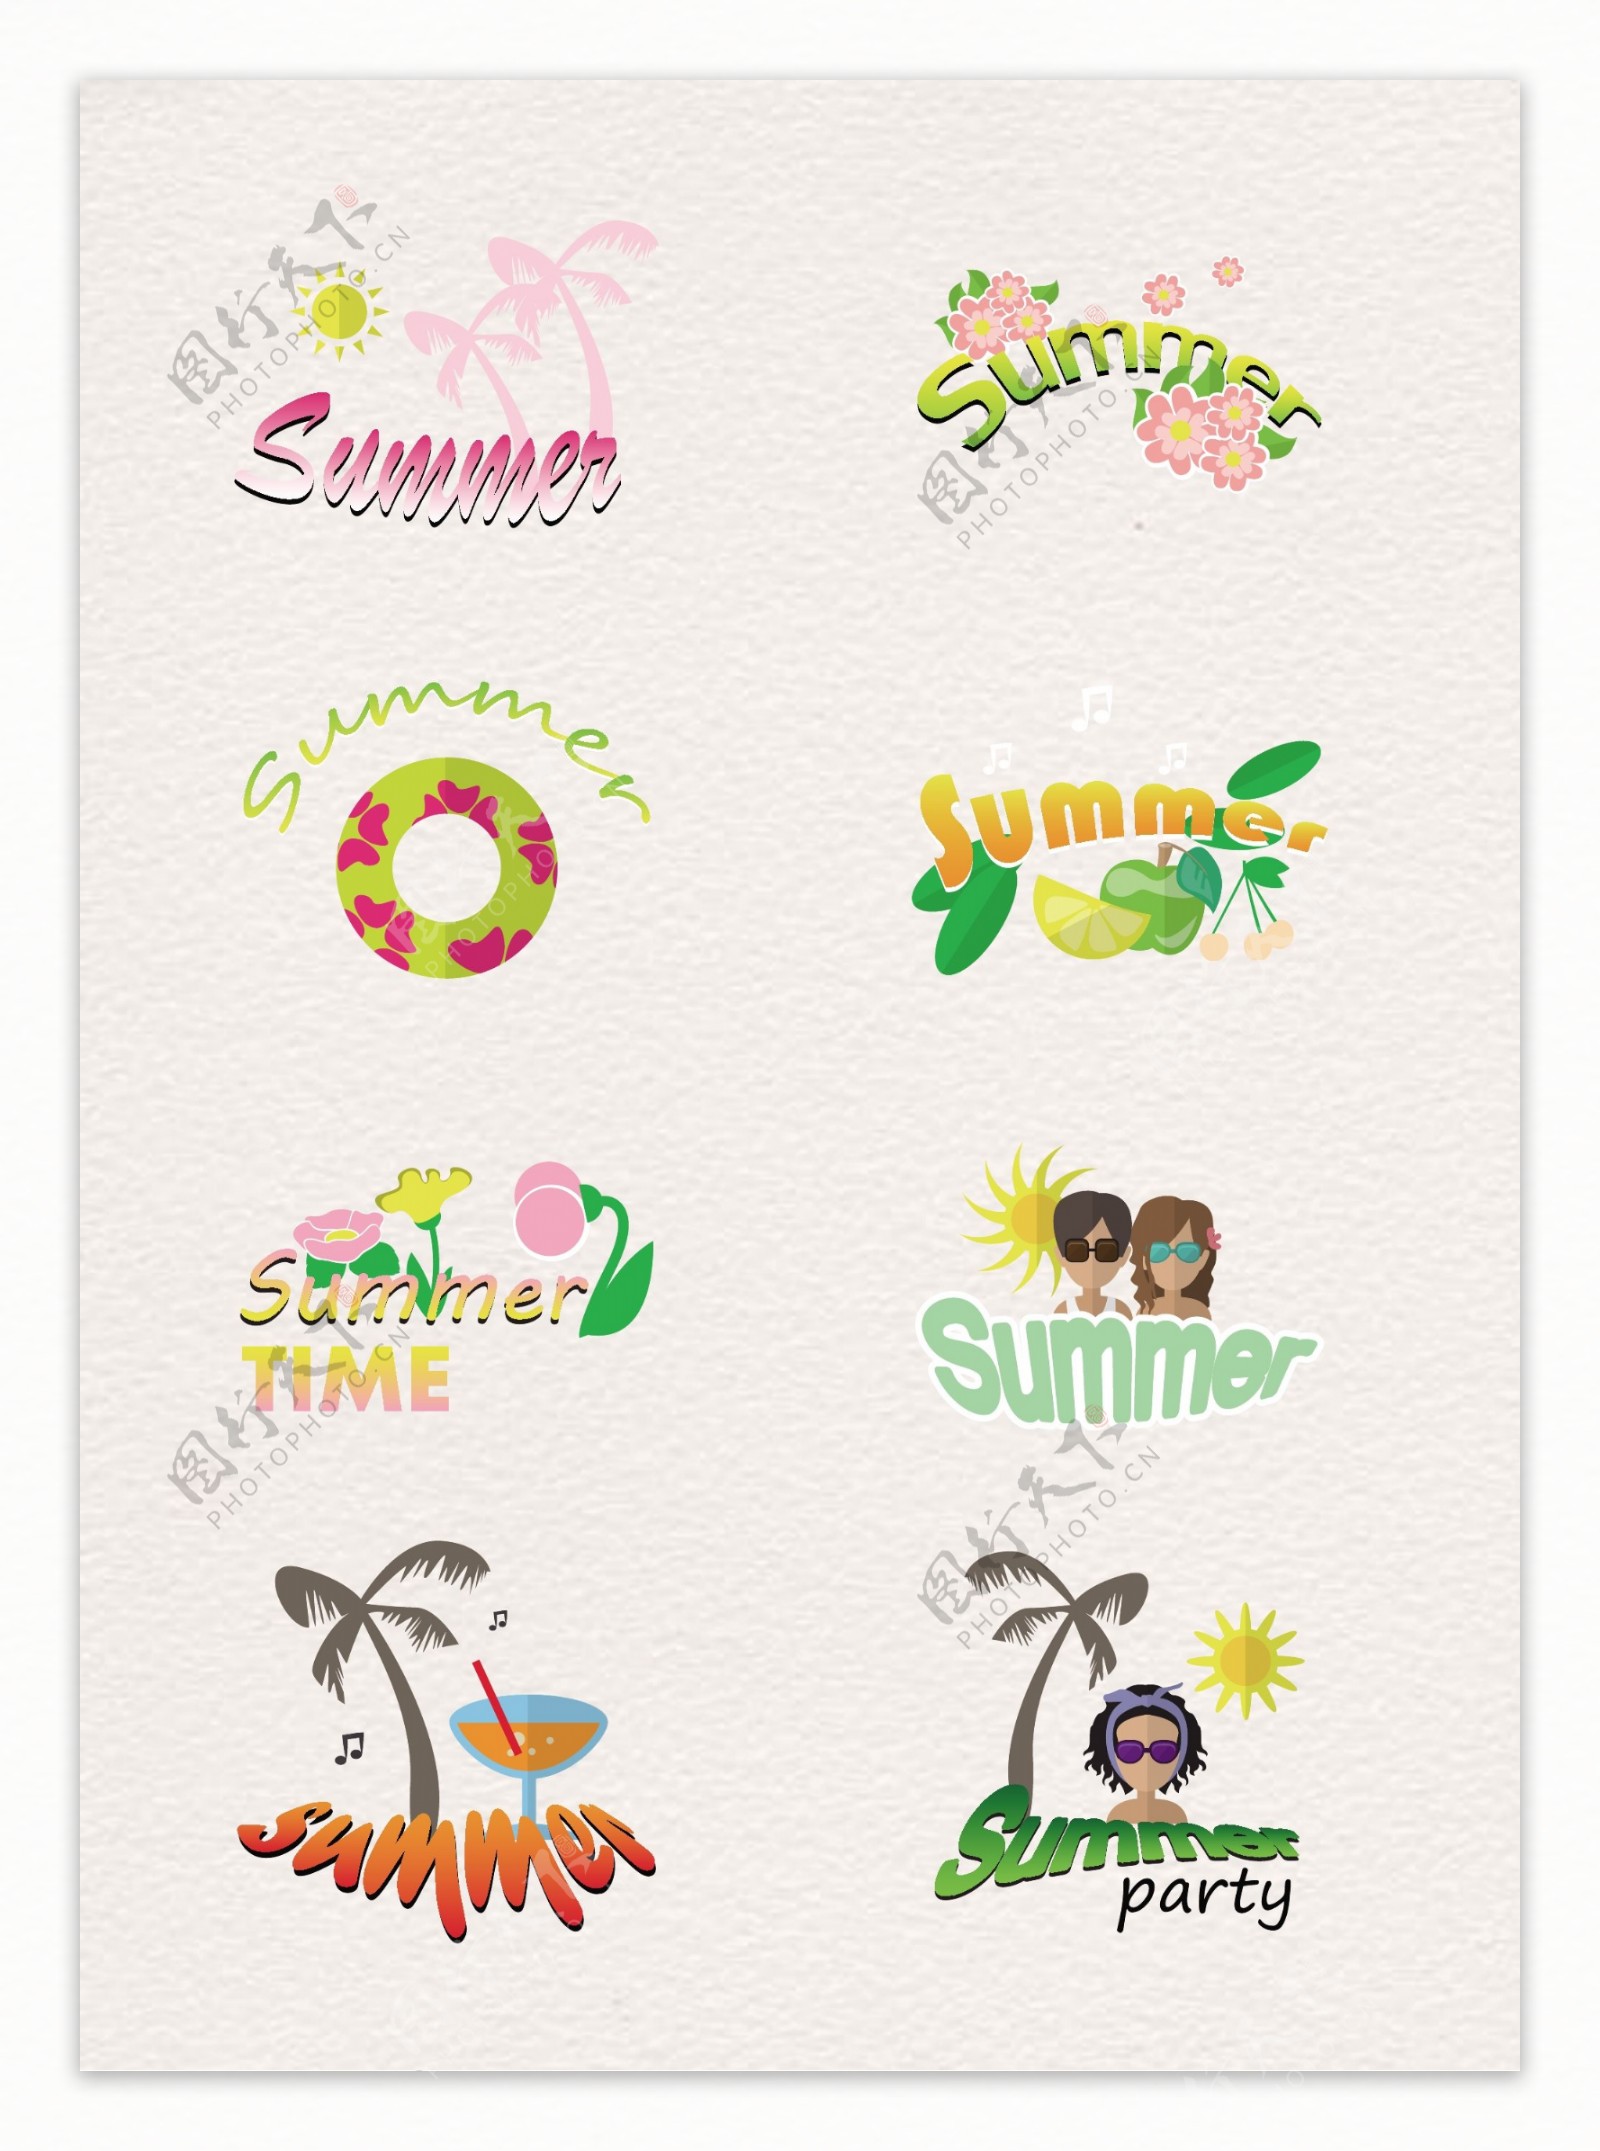 小清新夏日旅行沙滩度假标签设计